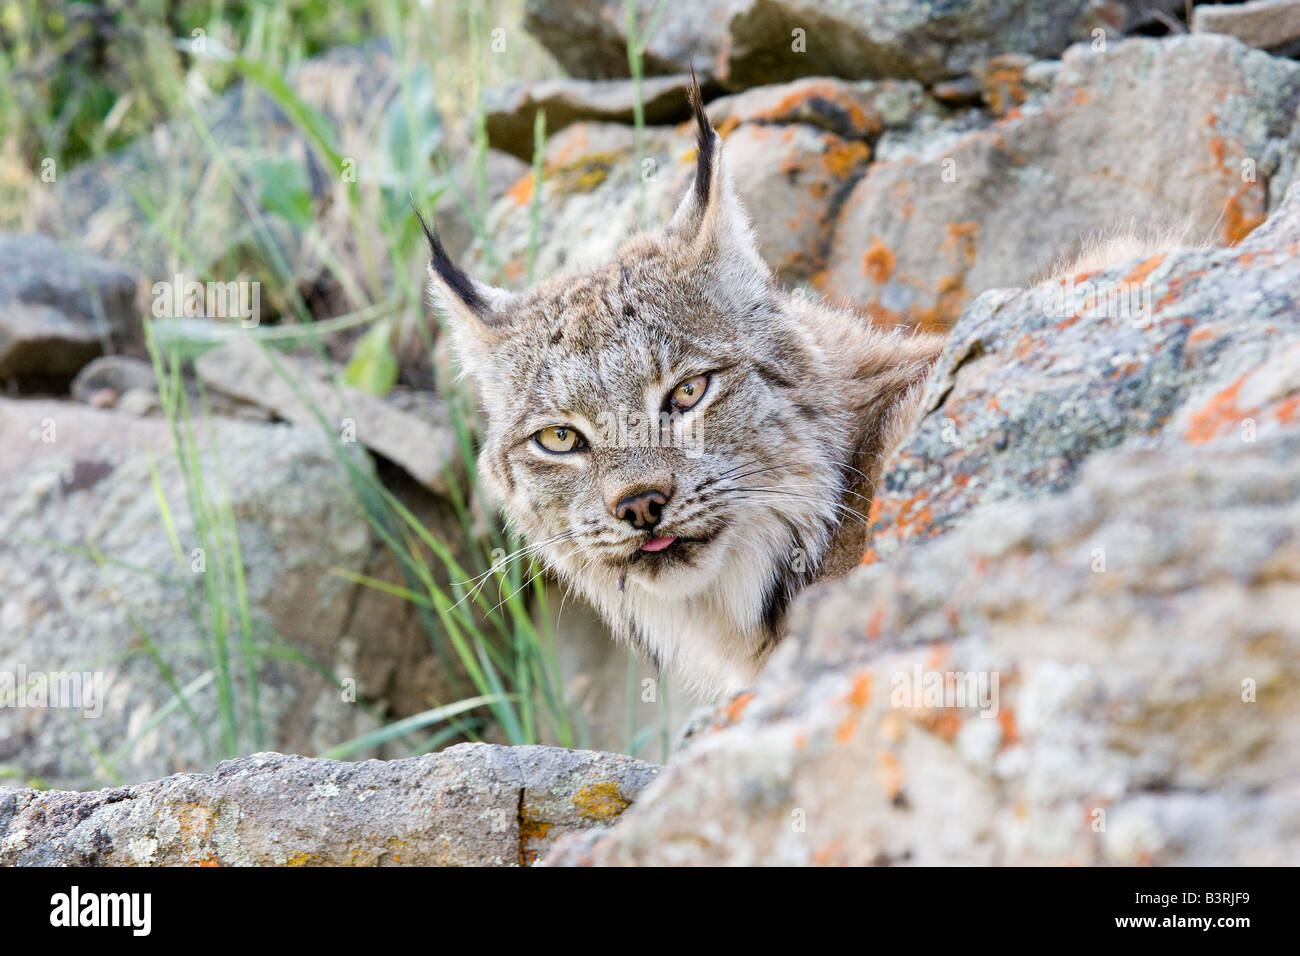 Les Lynx sur une barre rocheuse. Banque D'Images